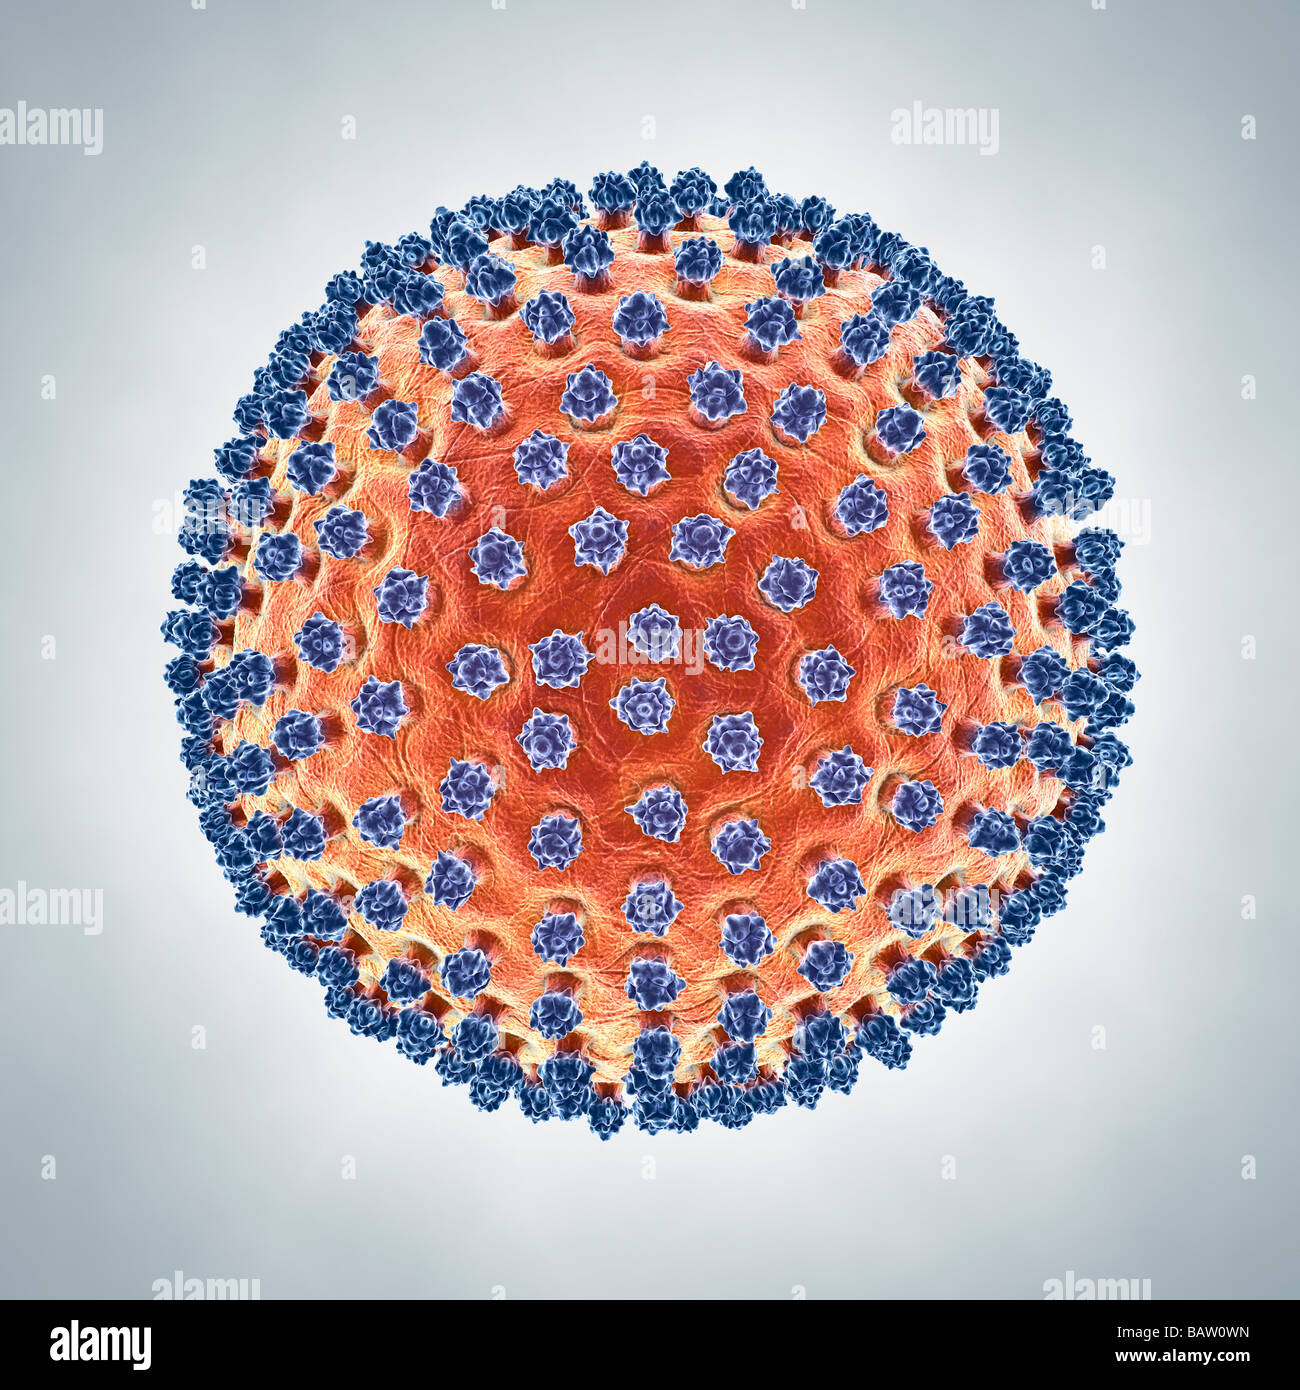 Illustrazione di un virus H1N1 simbolo di infezione malattia epidemia pandemia pandemia Foto Stock